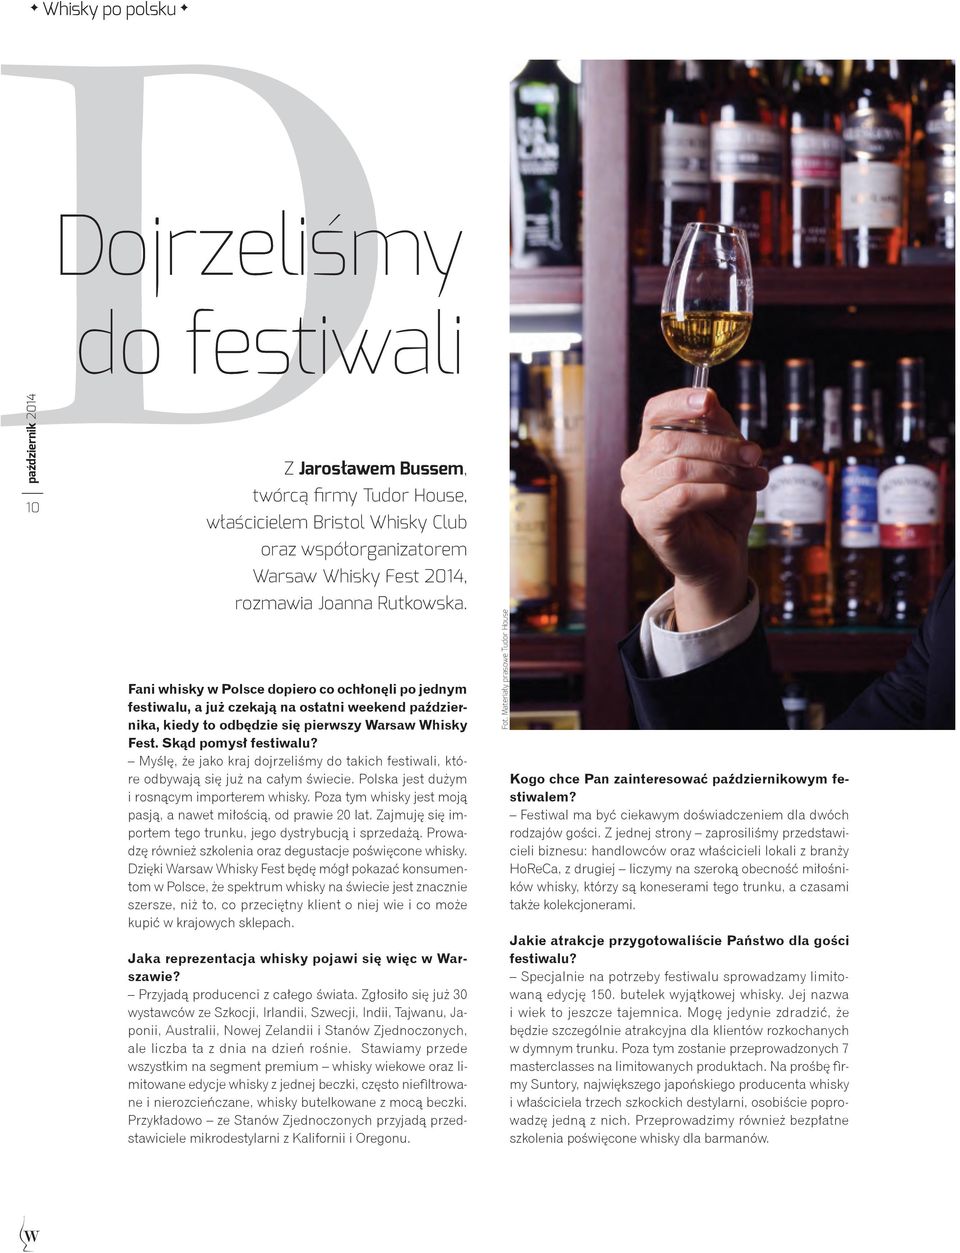 Myślę, że jako kraj dojrzeliśmy do takich festiwali, które odbywają się już na całym świecie. Polska jest dużym i rosnącym importerem whisky.